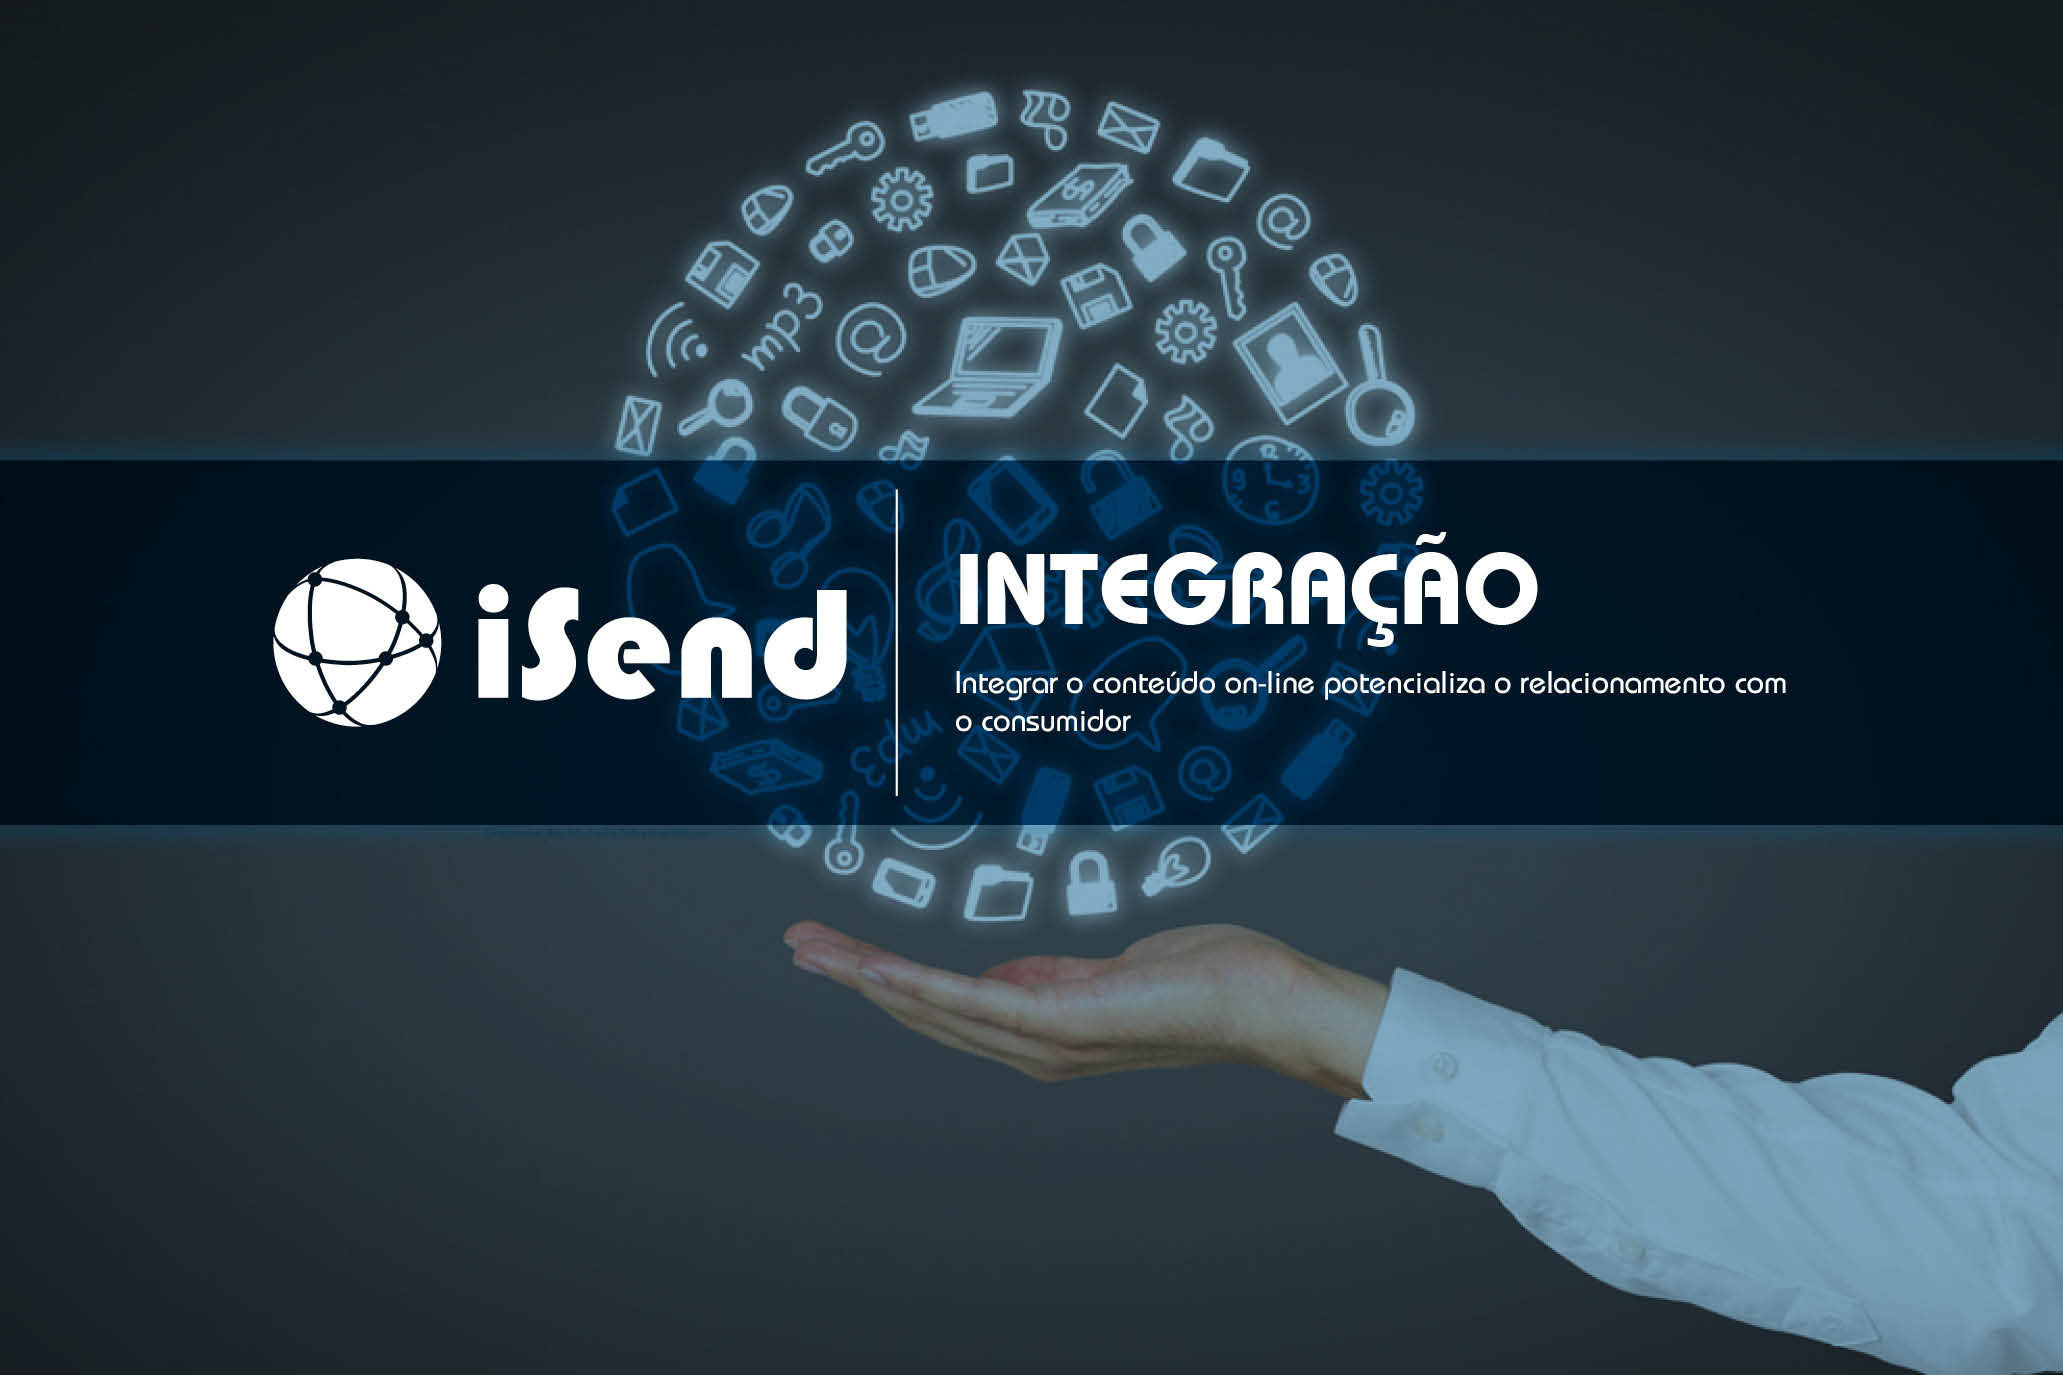 Revista iSend - Integração